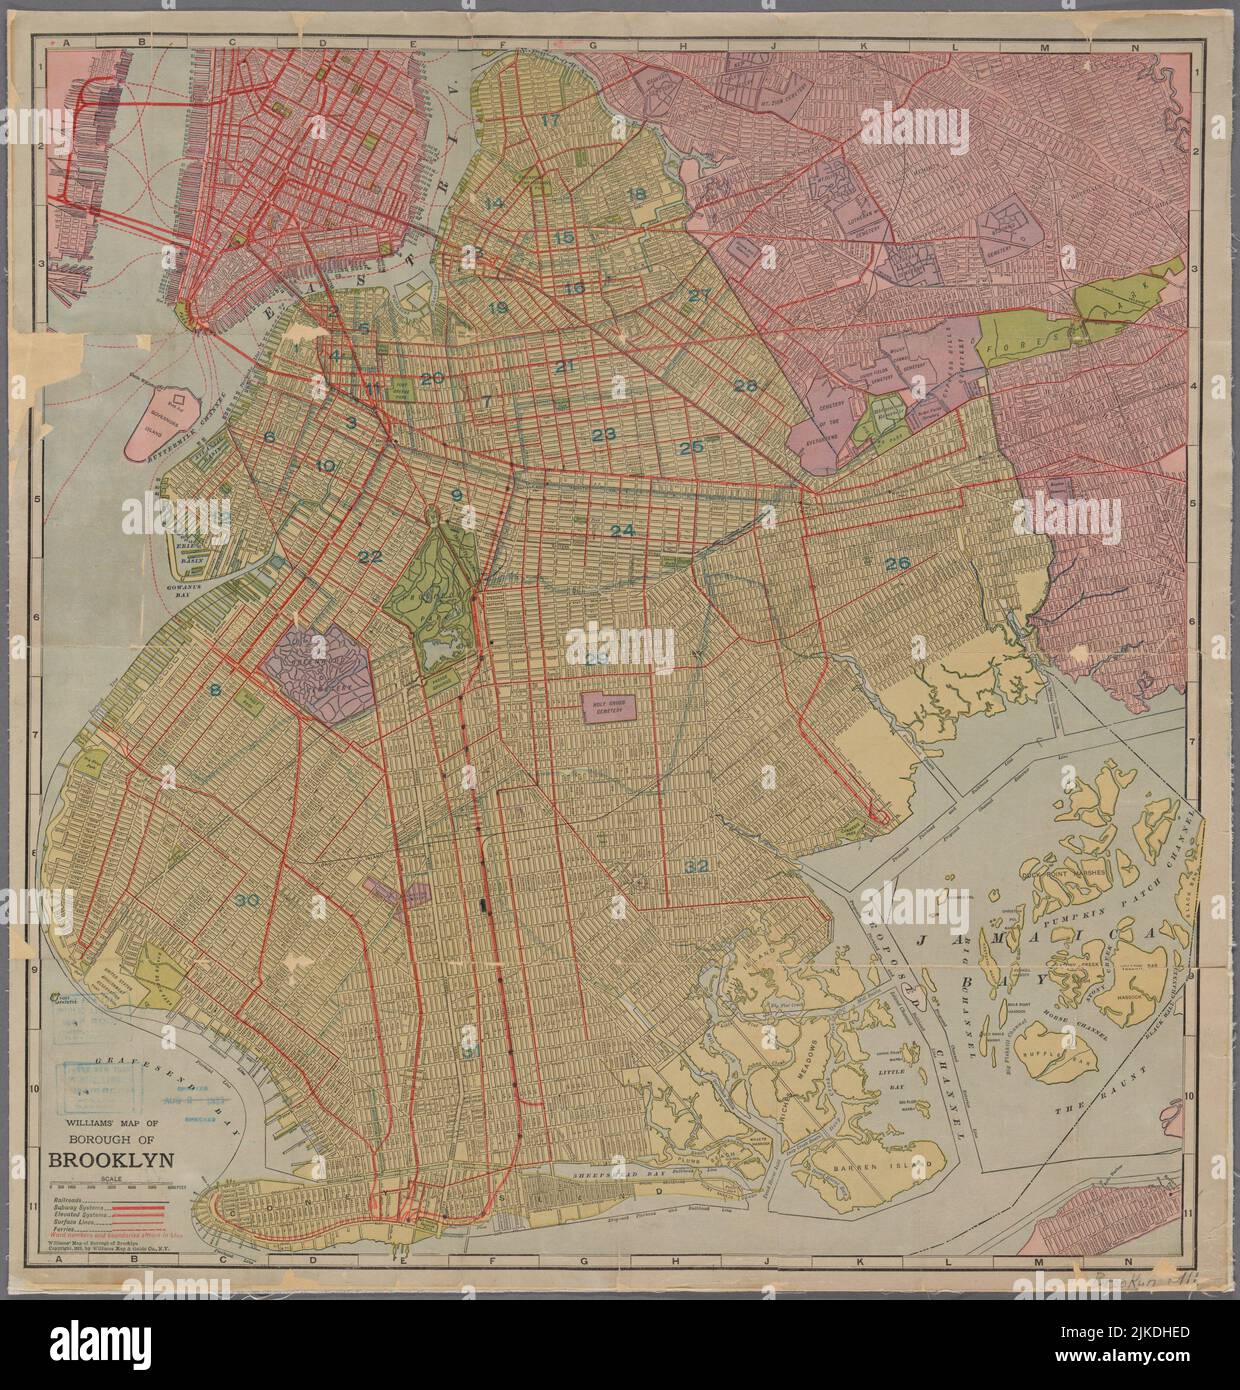 Mapa de Williams del Borough de Brooklyn. Mapas de la Ciudad de Nueva York y del Estado de Nueva York Brooklyn. Fecha de publicación: 1911 Lugar: Nueva York Editor: Williams Foto de stock